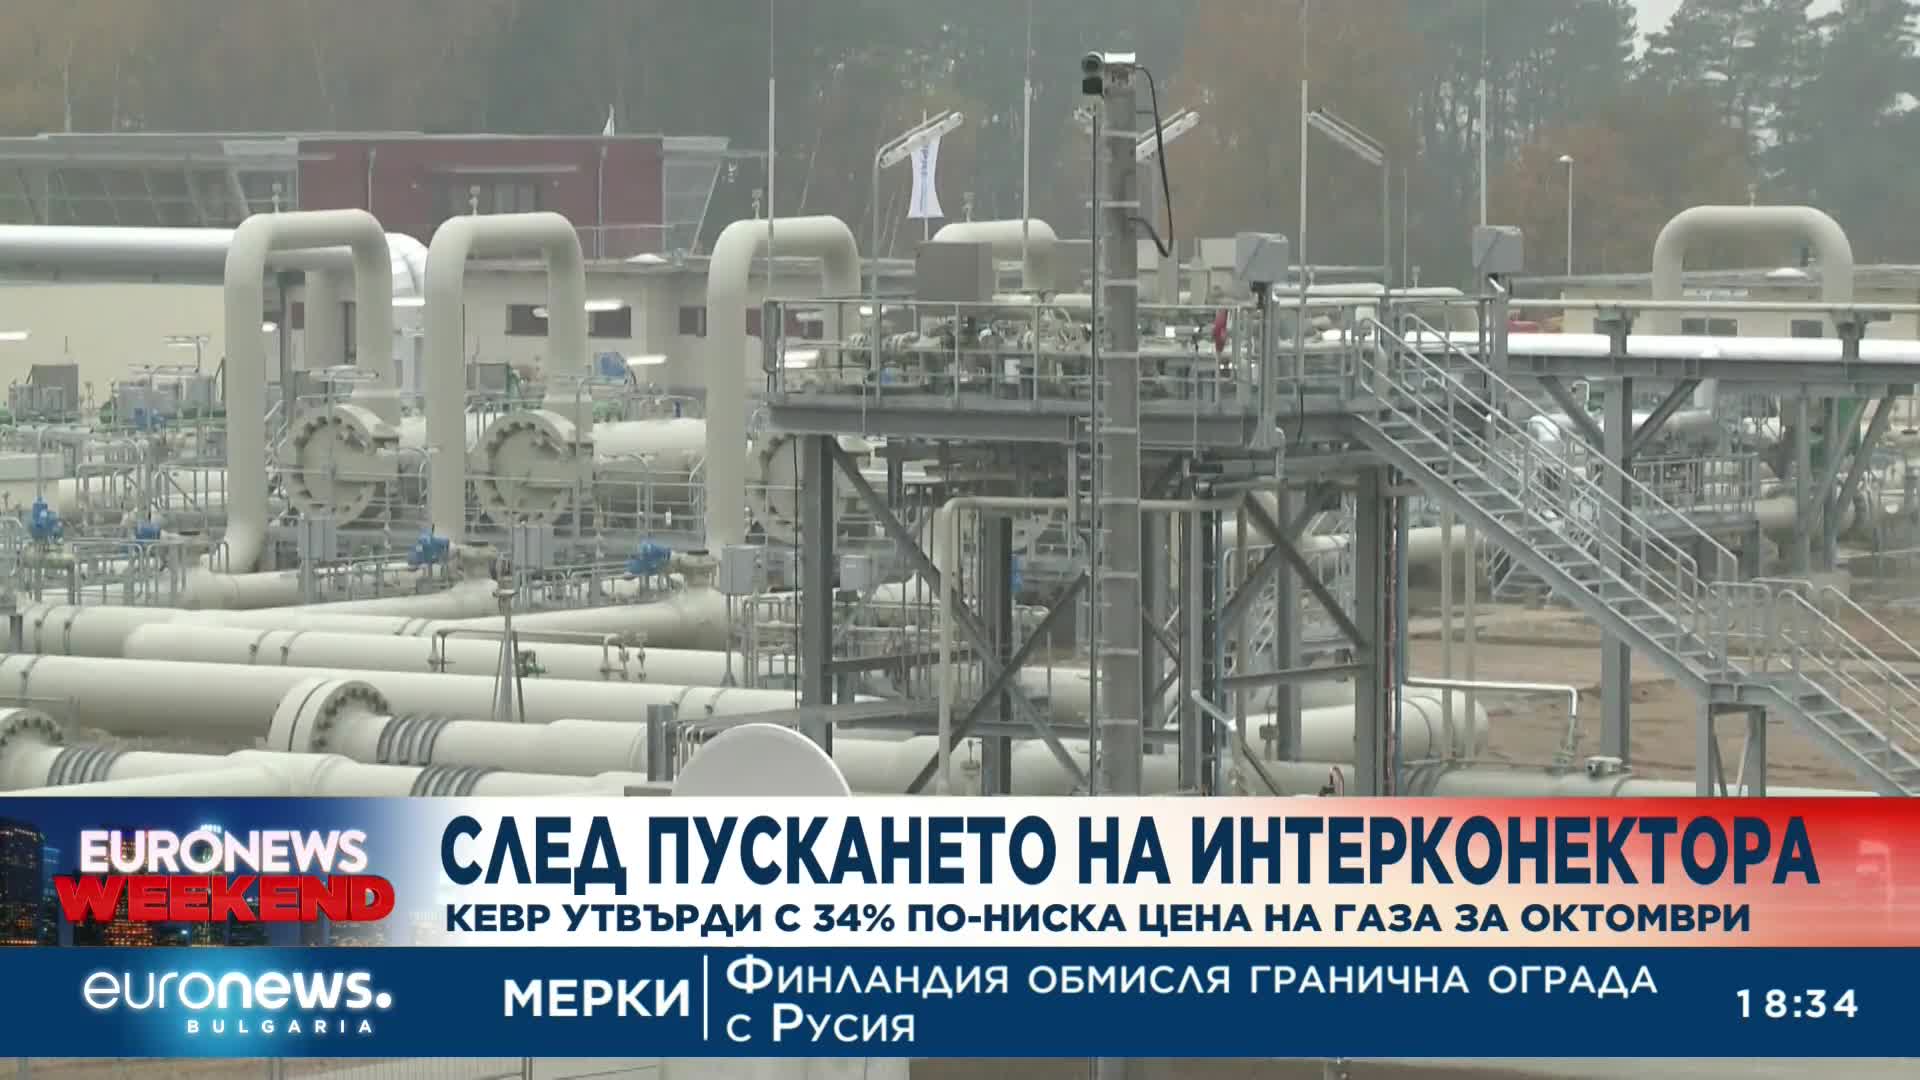 След пускането на интерконектора: КЕВР утвърди с 34% по-ниска цена на газа за октомври